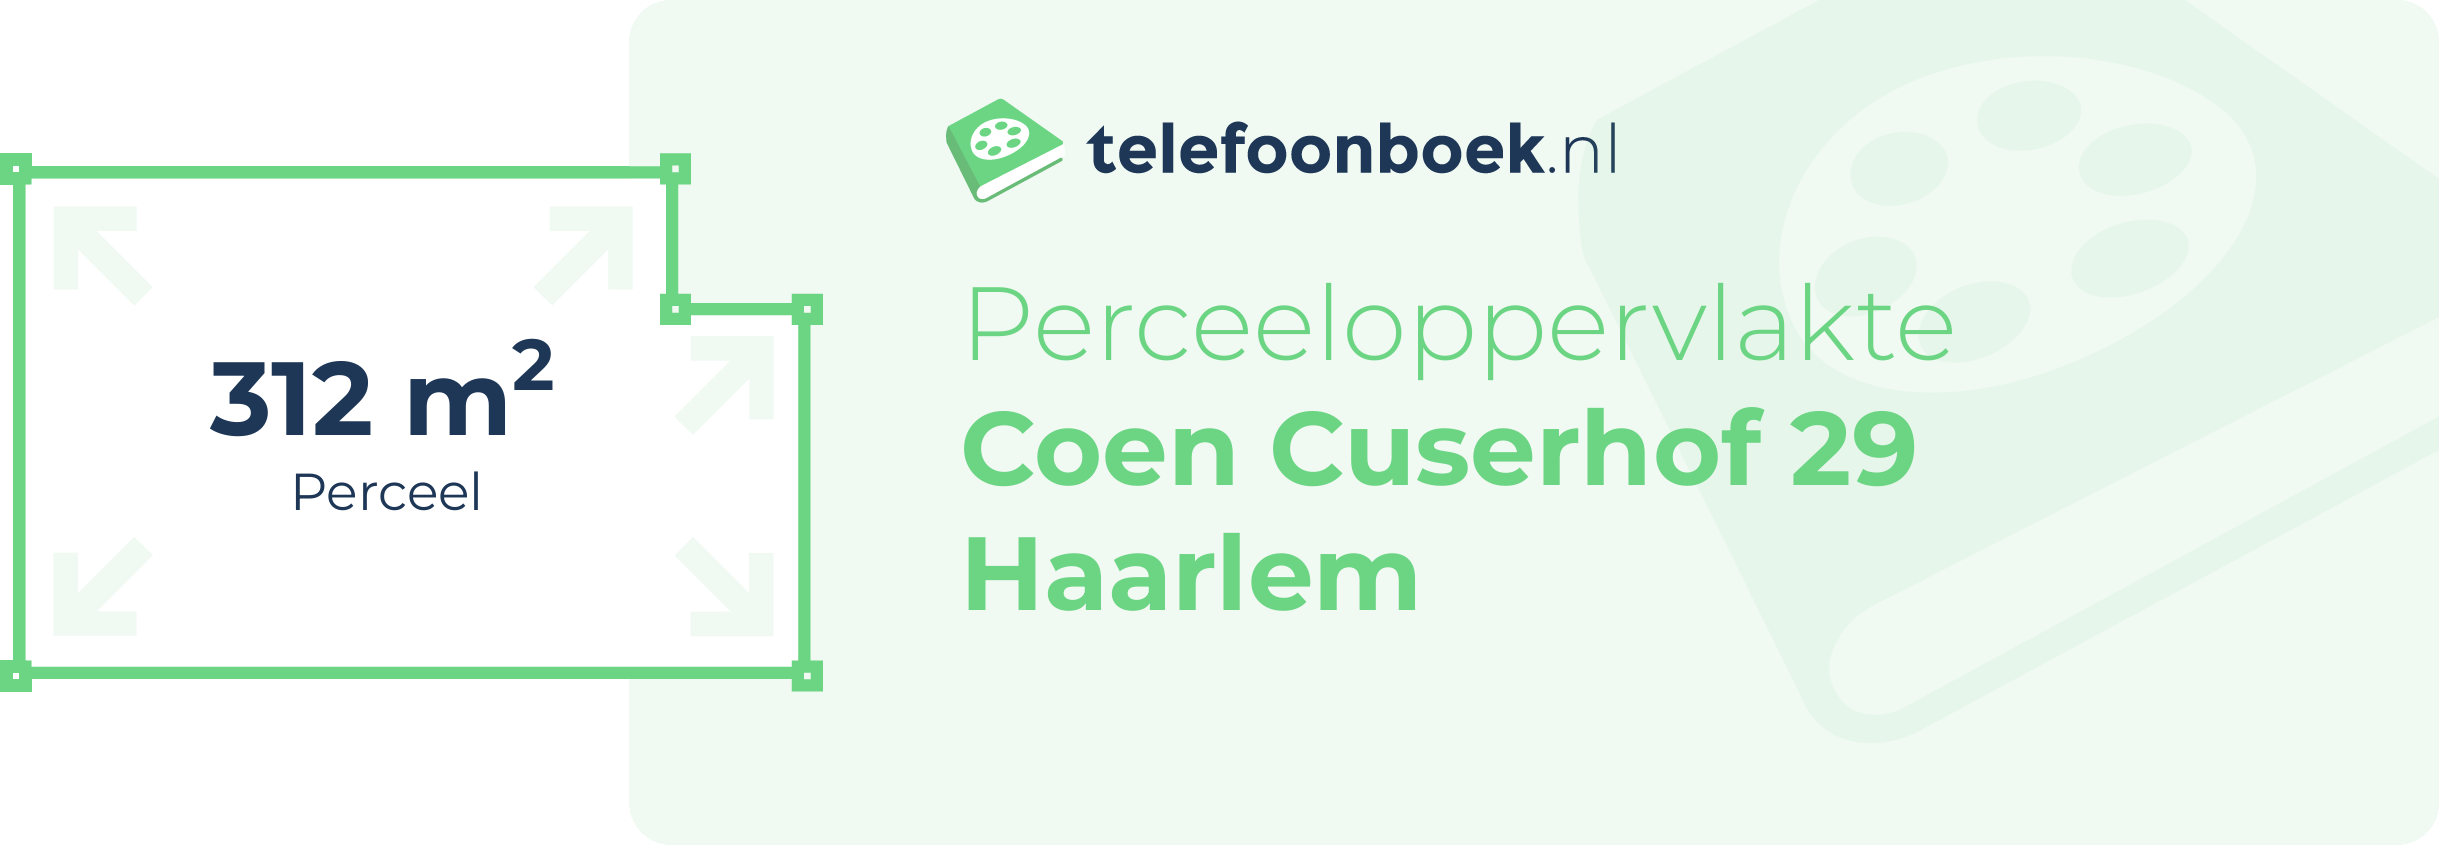 Perceeloppervlakte Coen Cuserhof 29 Haarlem